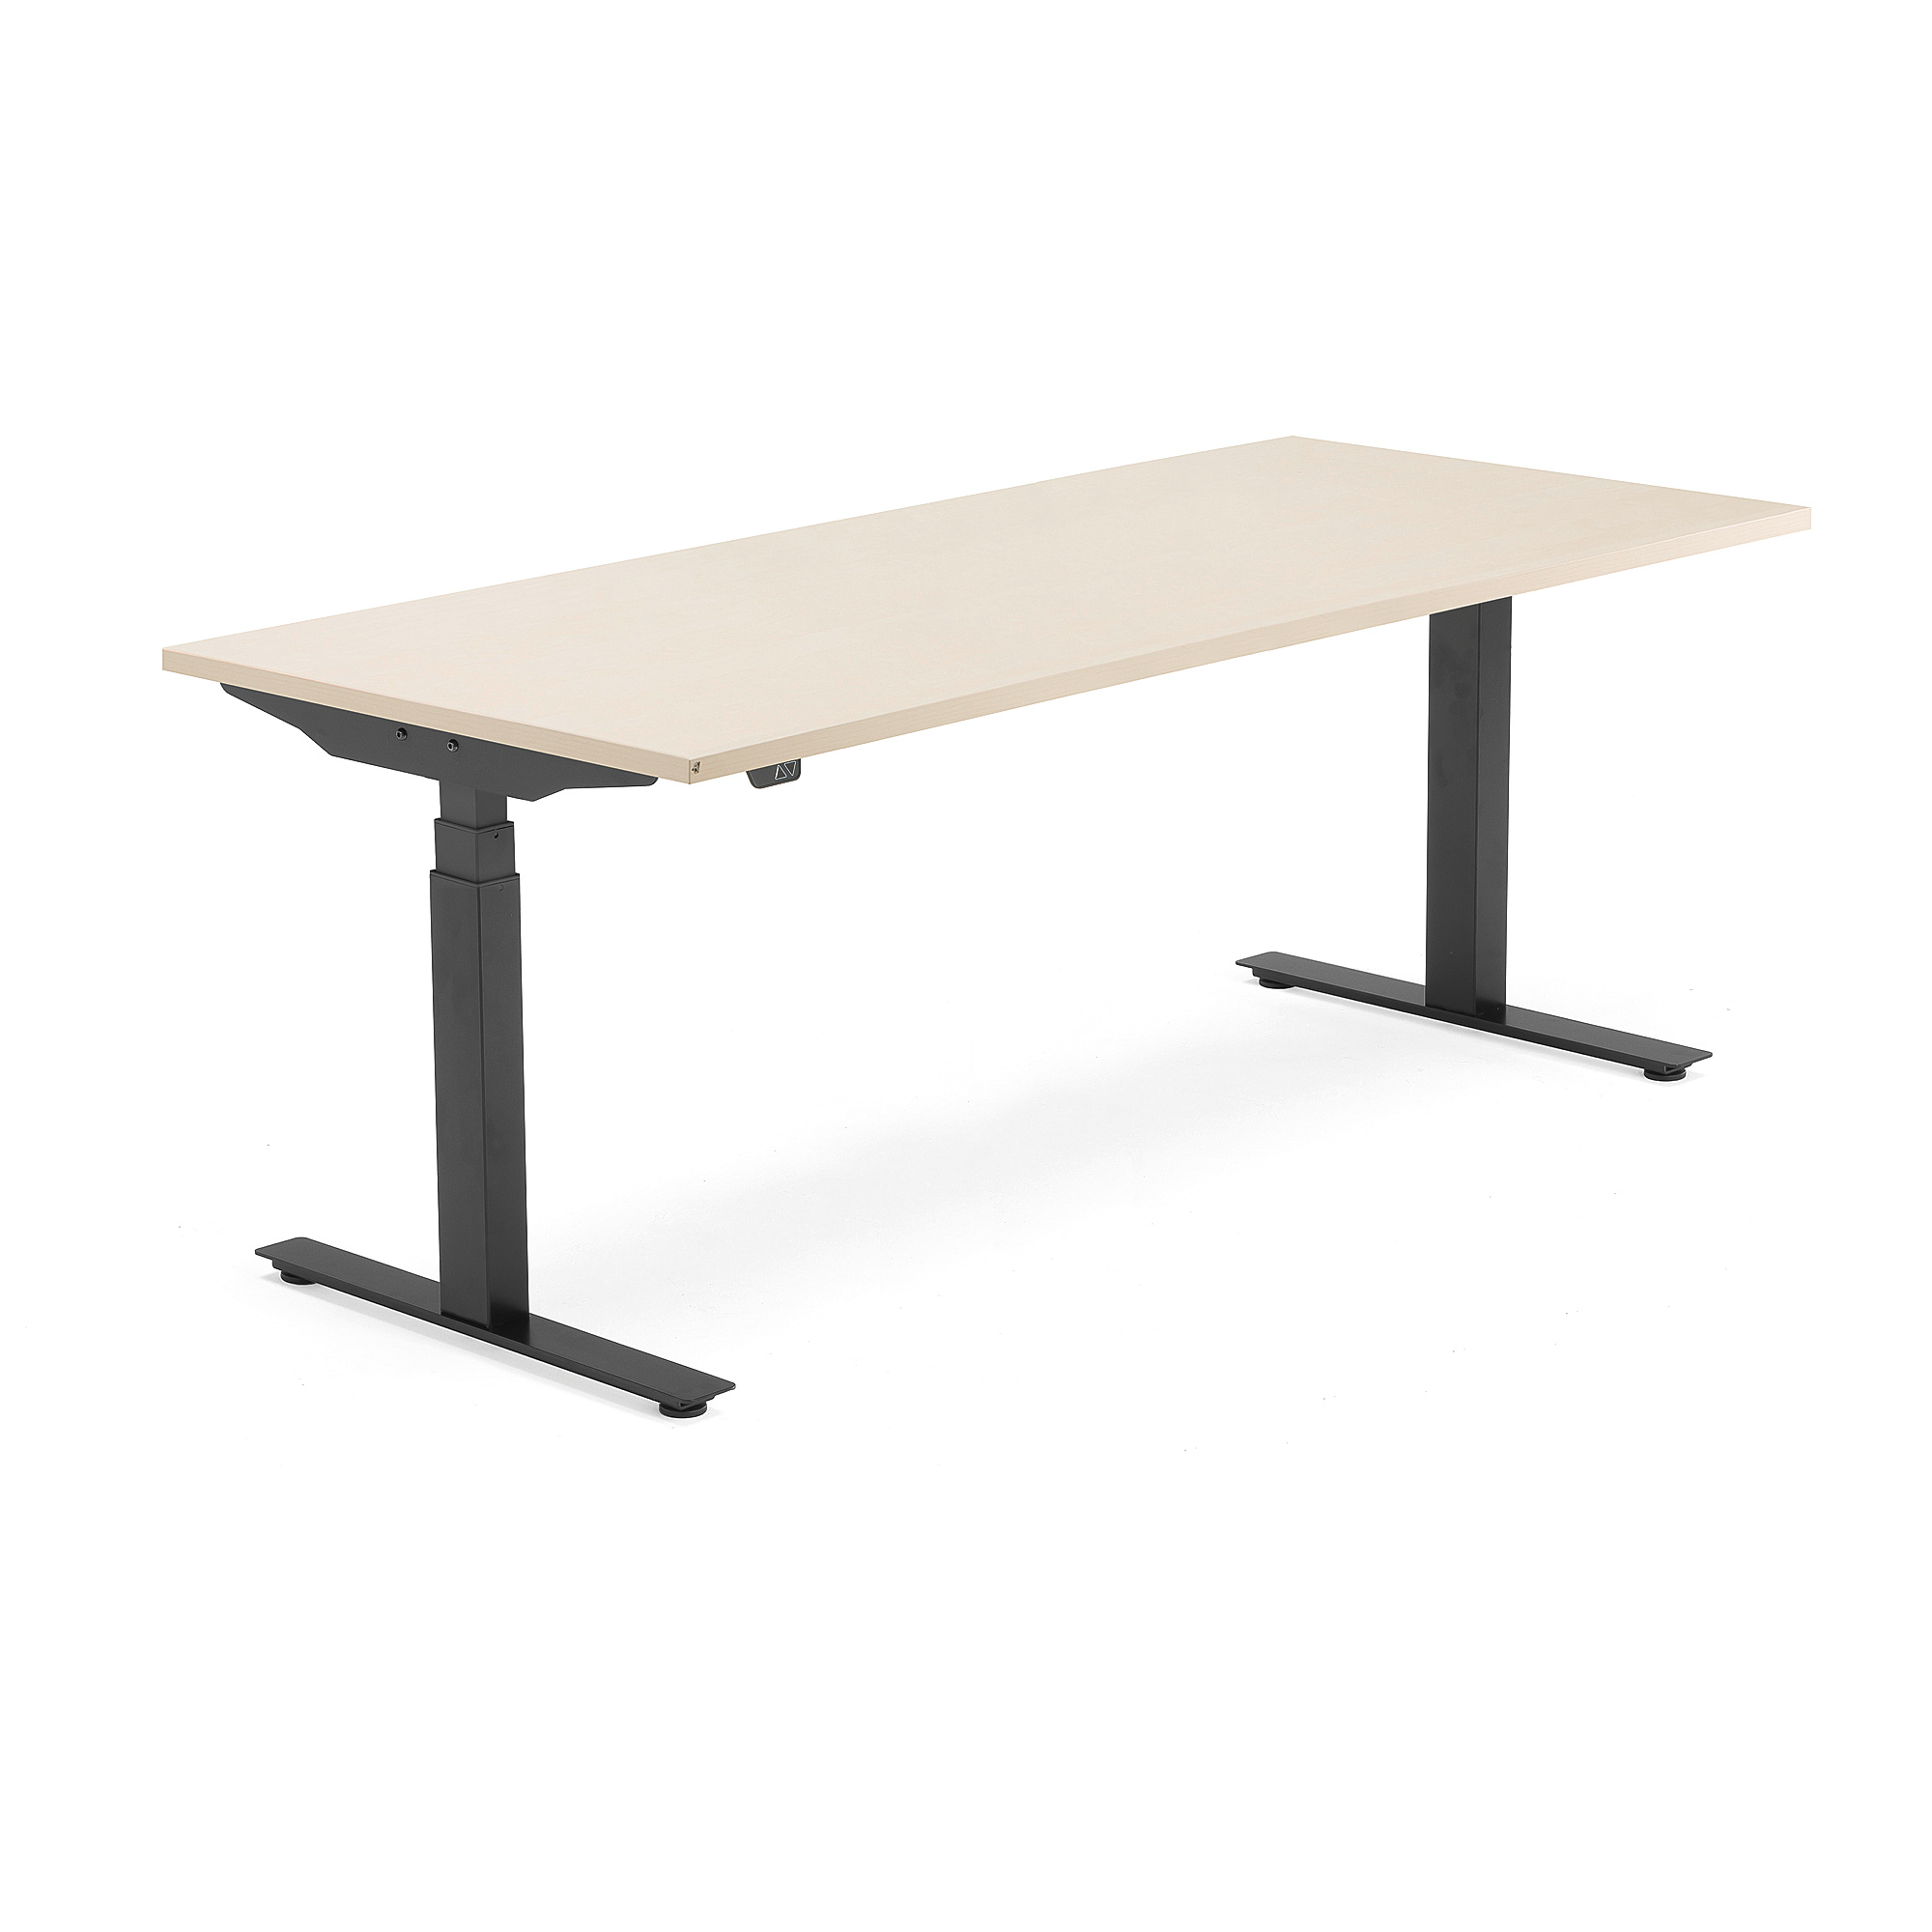 Výškově nastavitelný stůl MODULUS, 1800x800 mm, černý rám, bříza